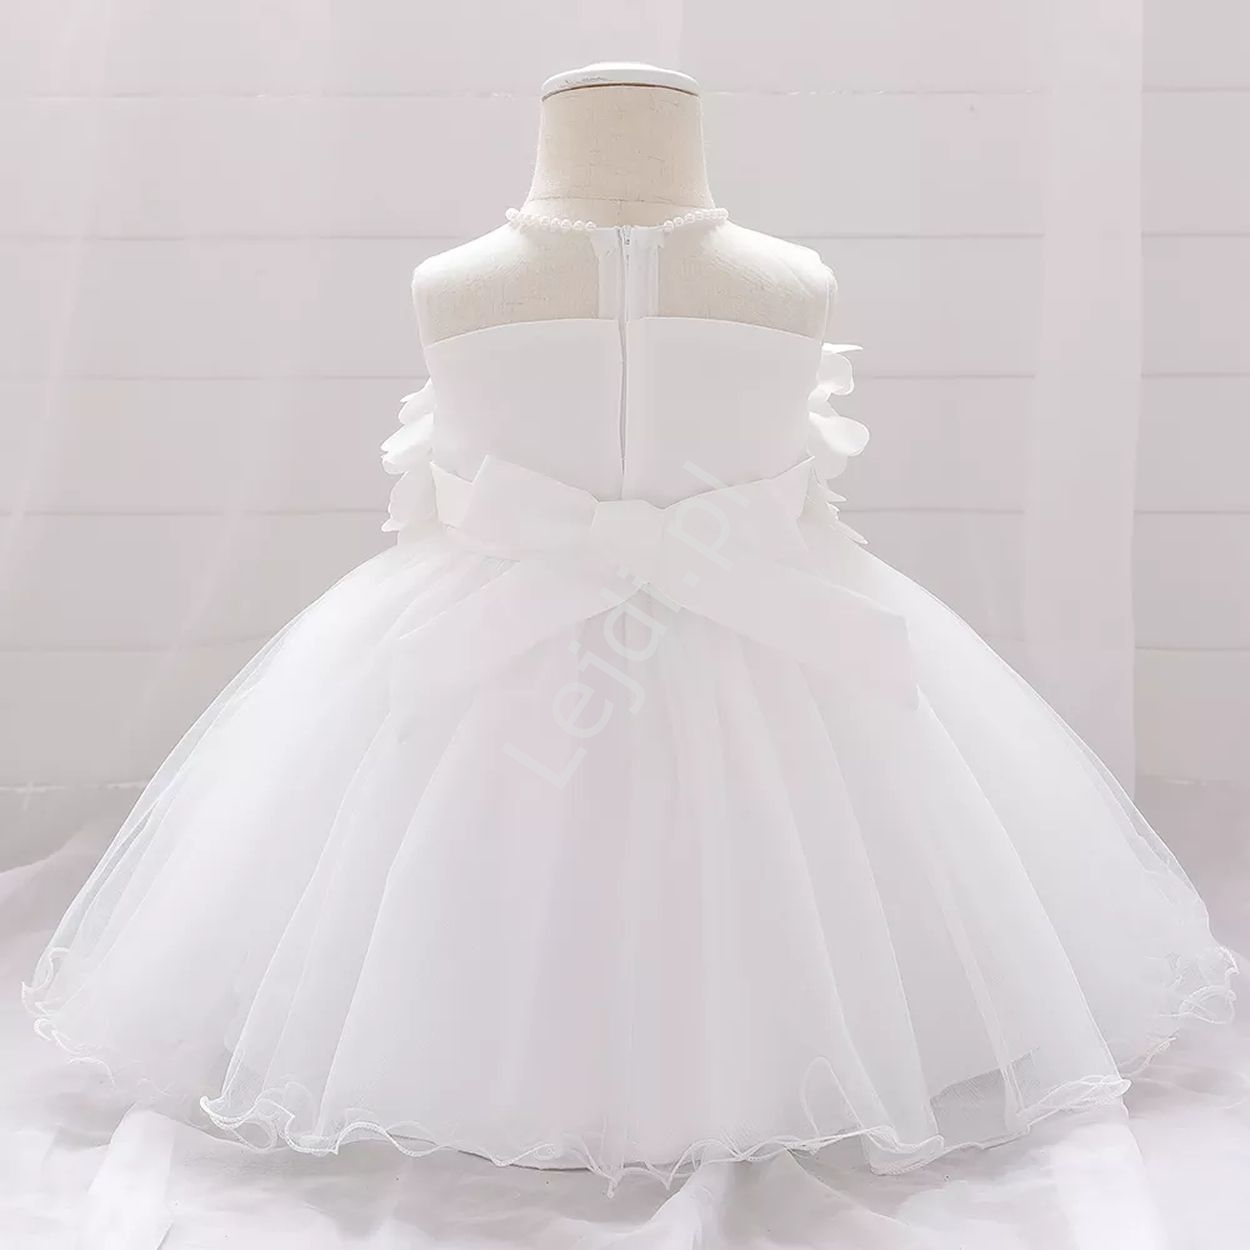 Biała sukienka dla dziewczynki na roczek, na świeta, czy dla małej druhny